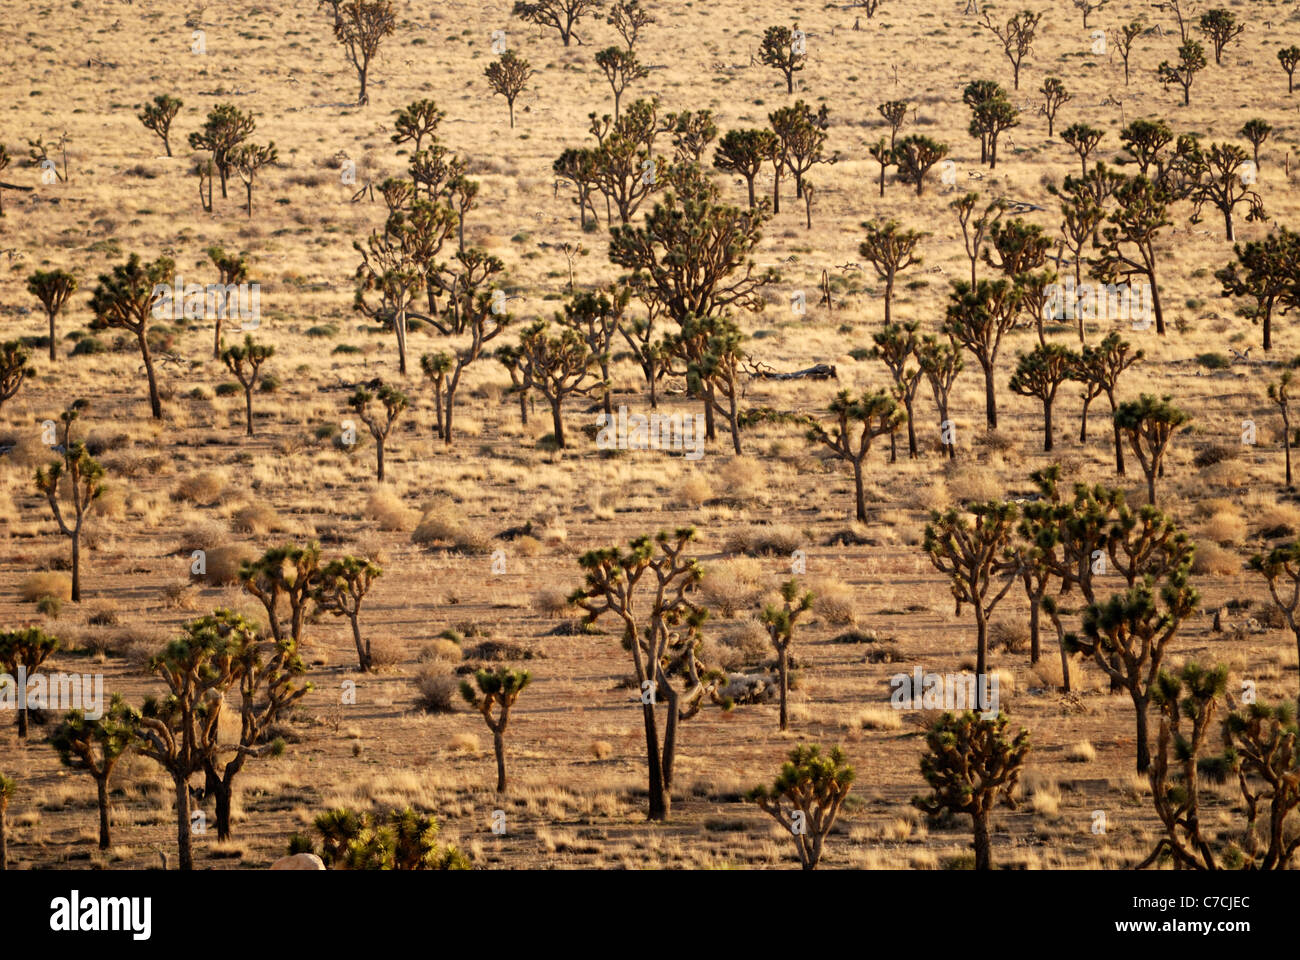 Joshua trees, Joshua Tree National Park, California, USA Stock Photo